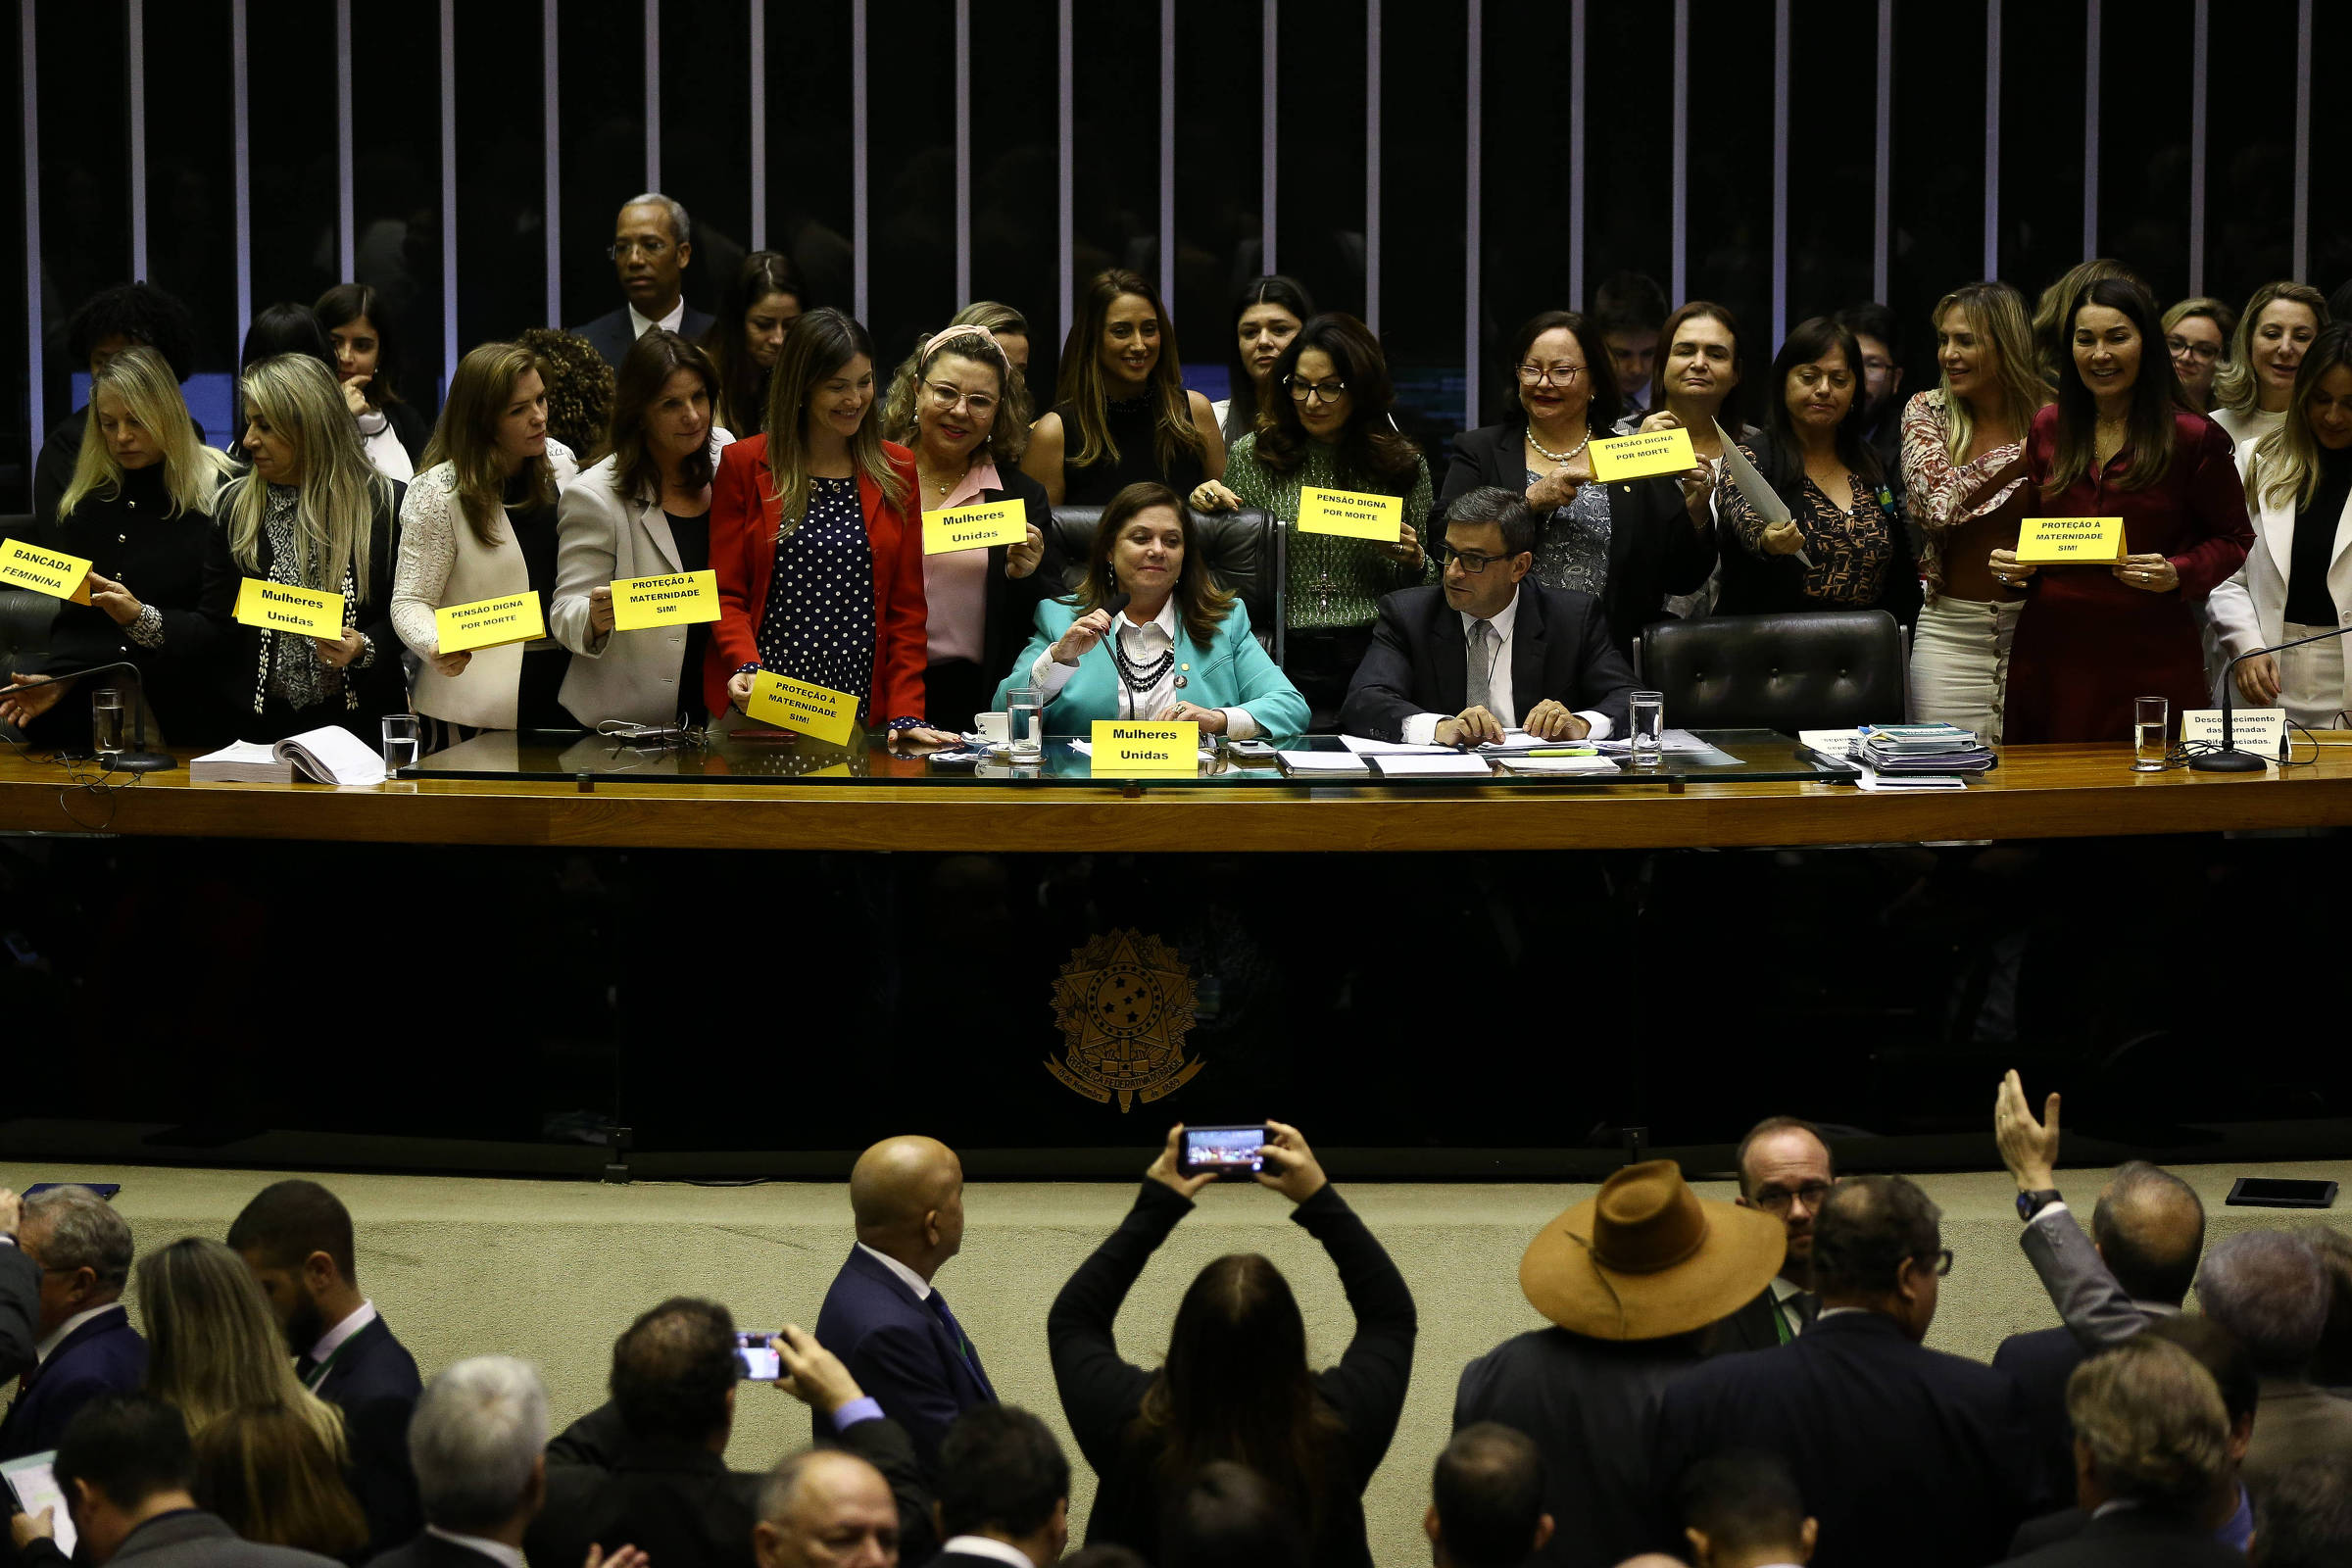 Bancada feminina amplia presença em postos de poder, mas desigualdade  persiste no Congresso - 08/03/2020 - Poder - Folha